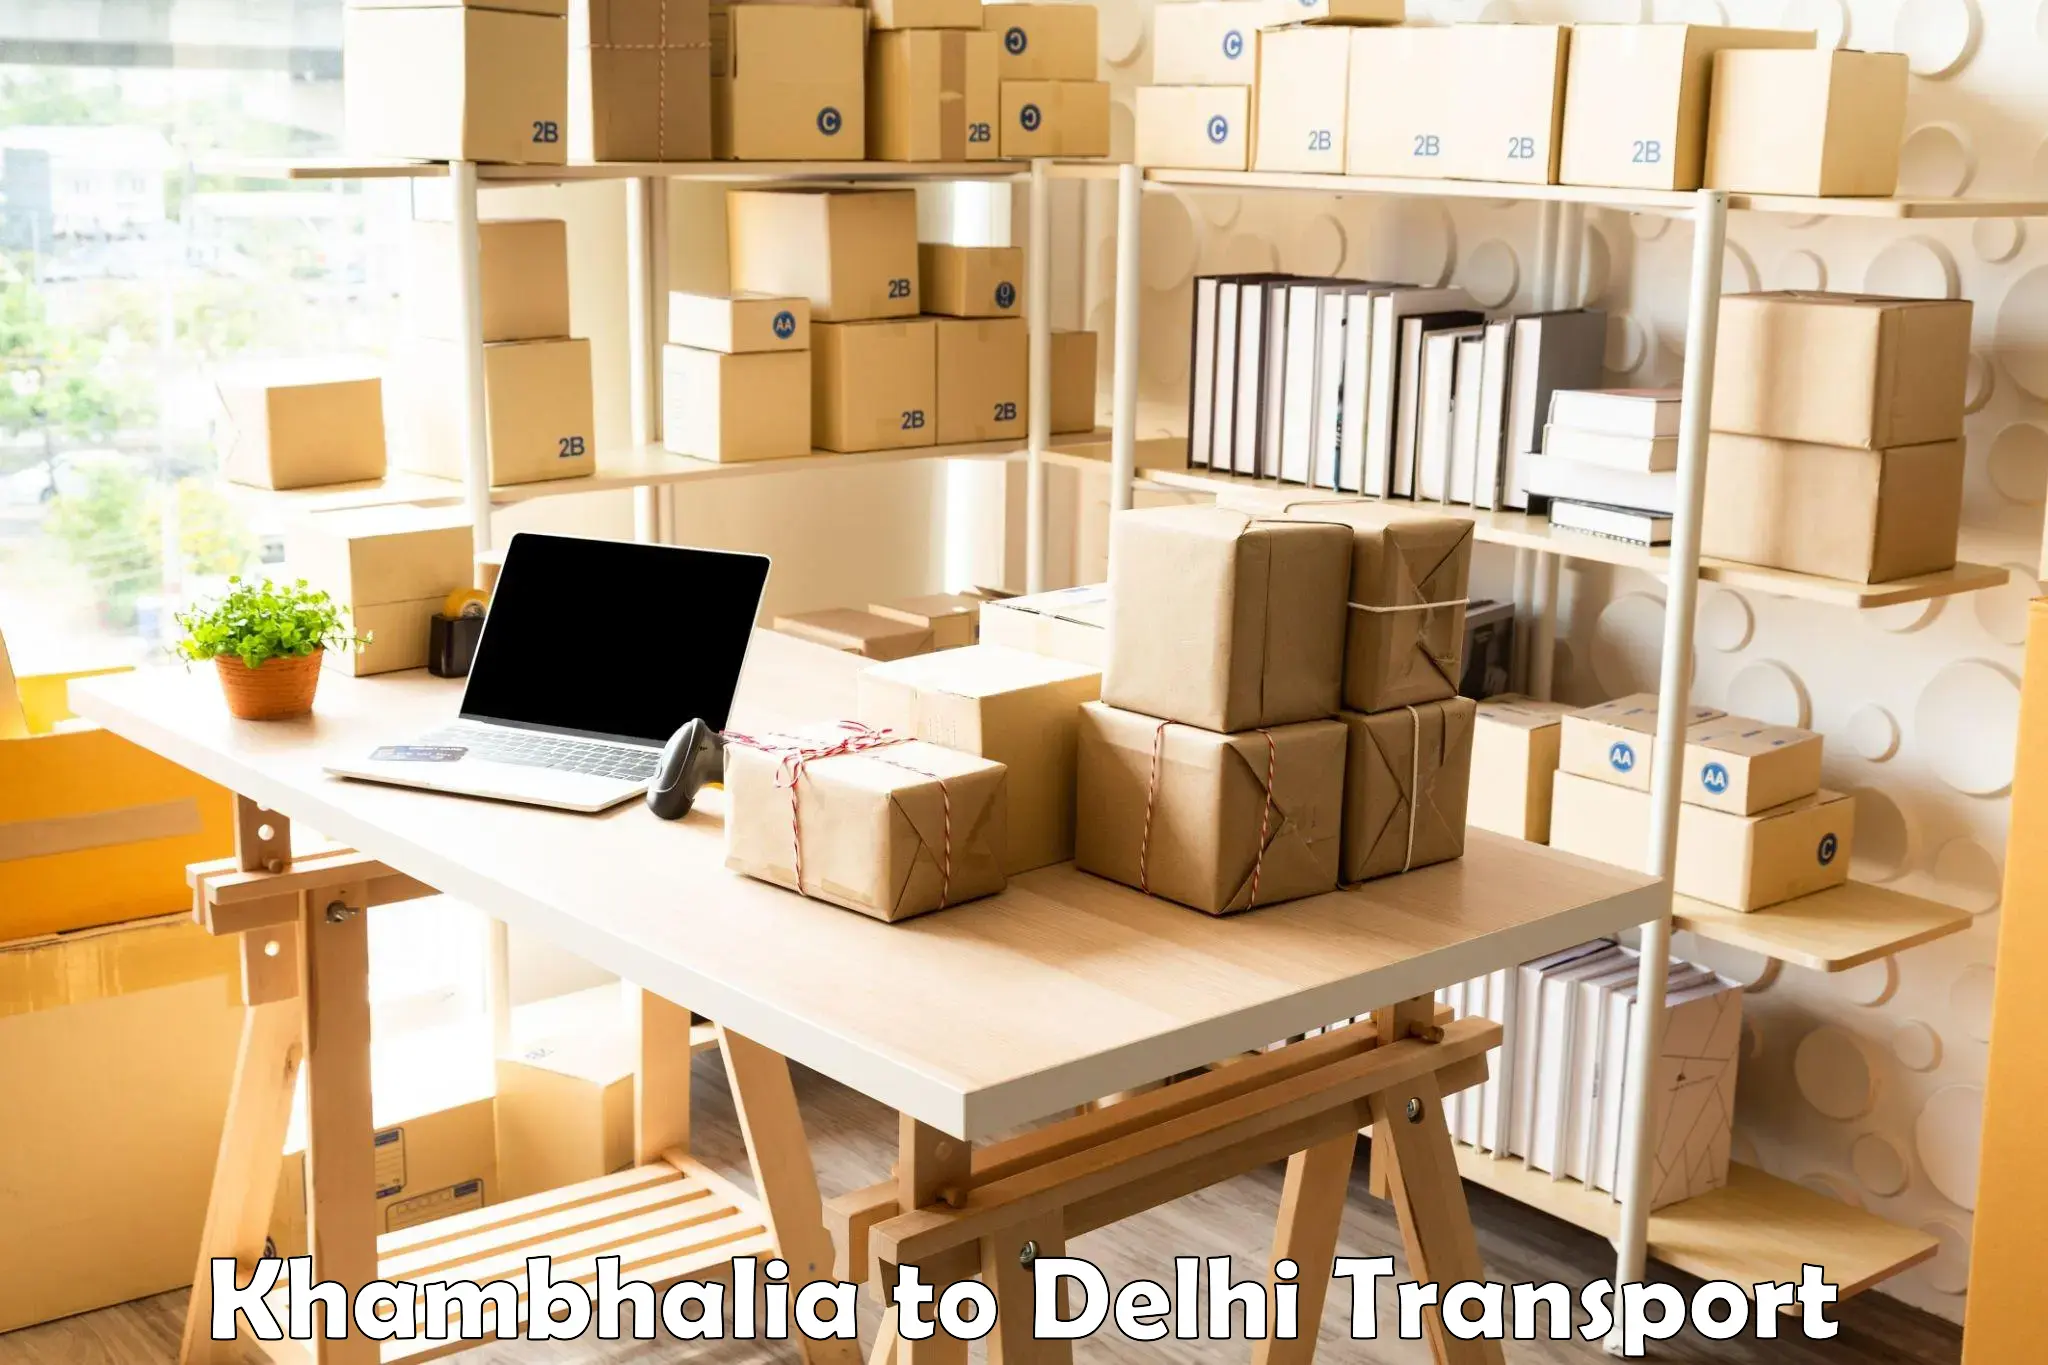 Daily transport service Khambhalia to NIT Delhi